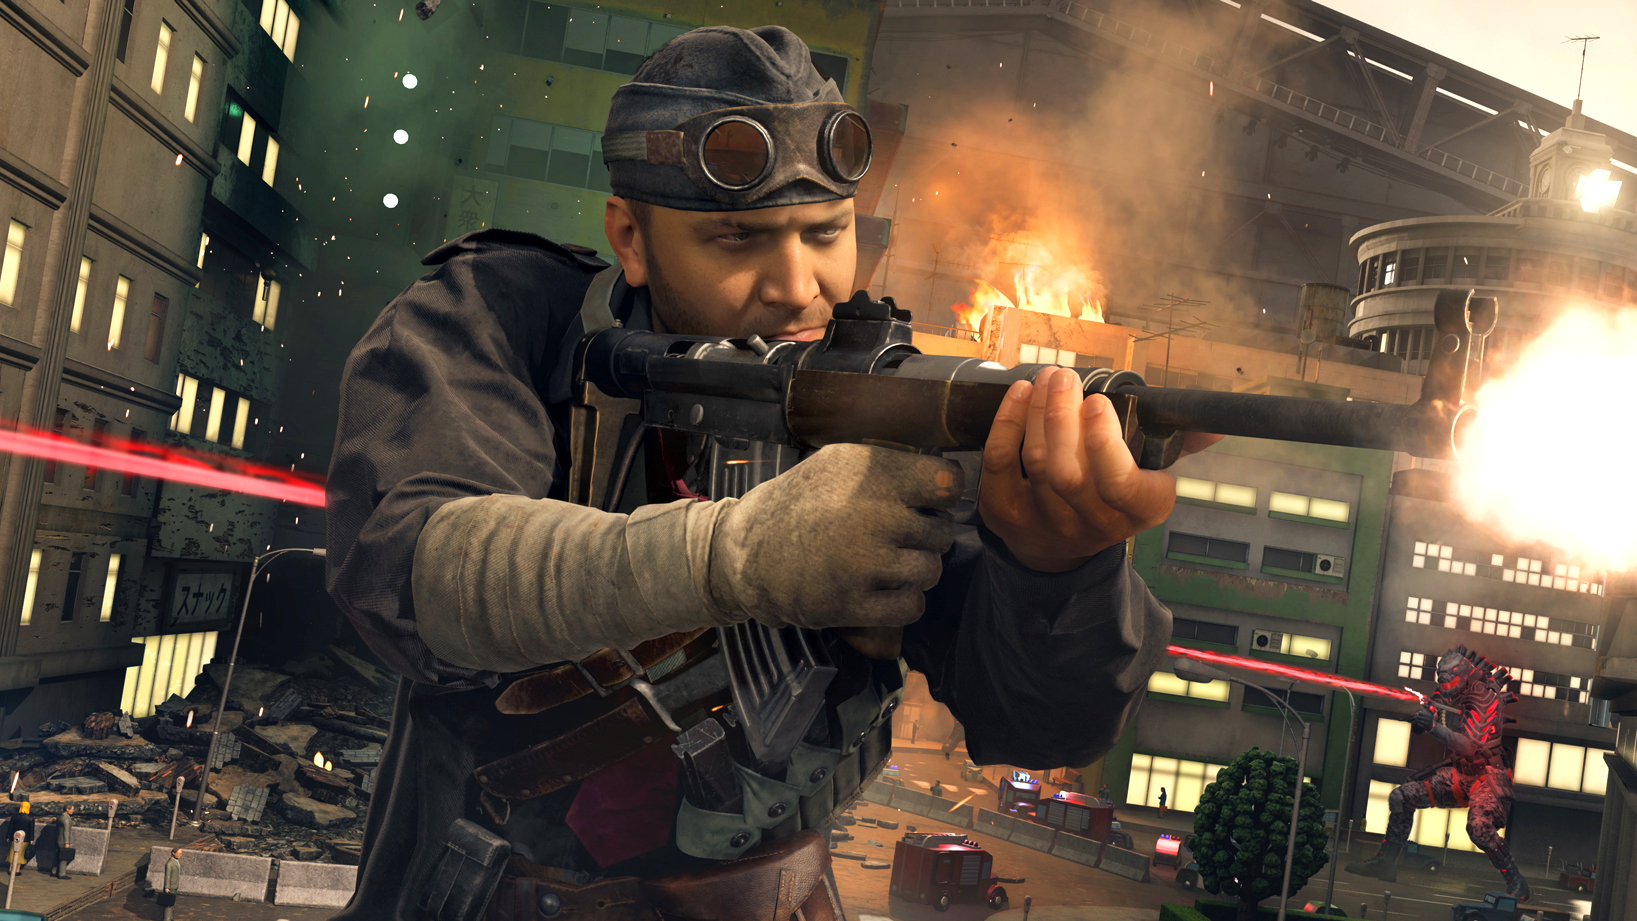 A soldier in Call of Duty: Vanguard firing a gun